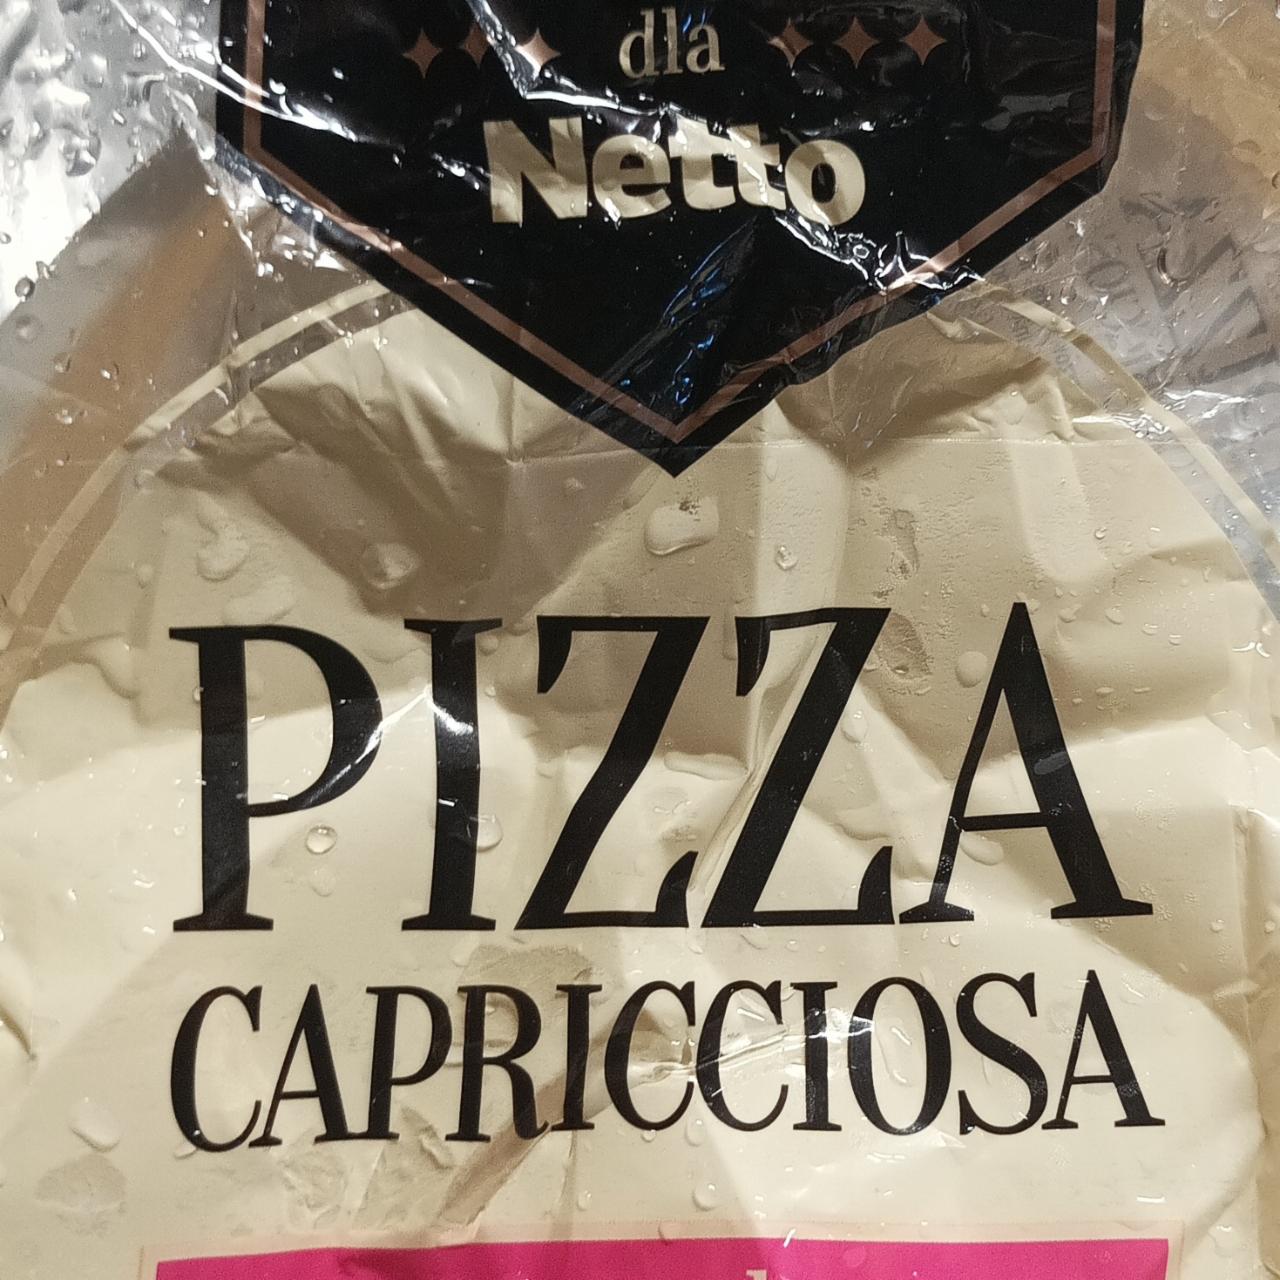 Fotografie - Pizza Capricciosa Perfetto dla Netto